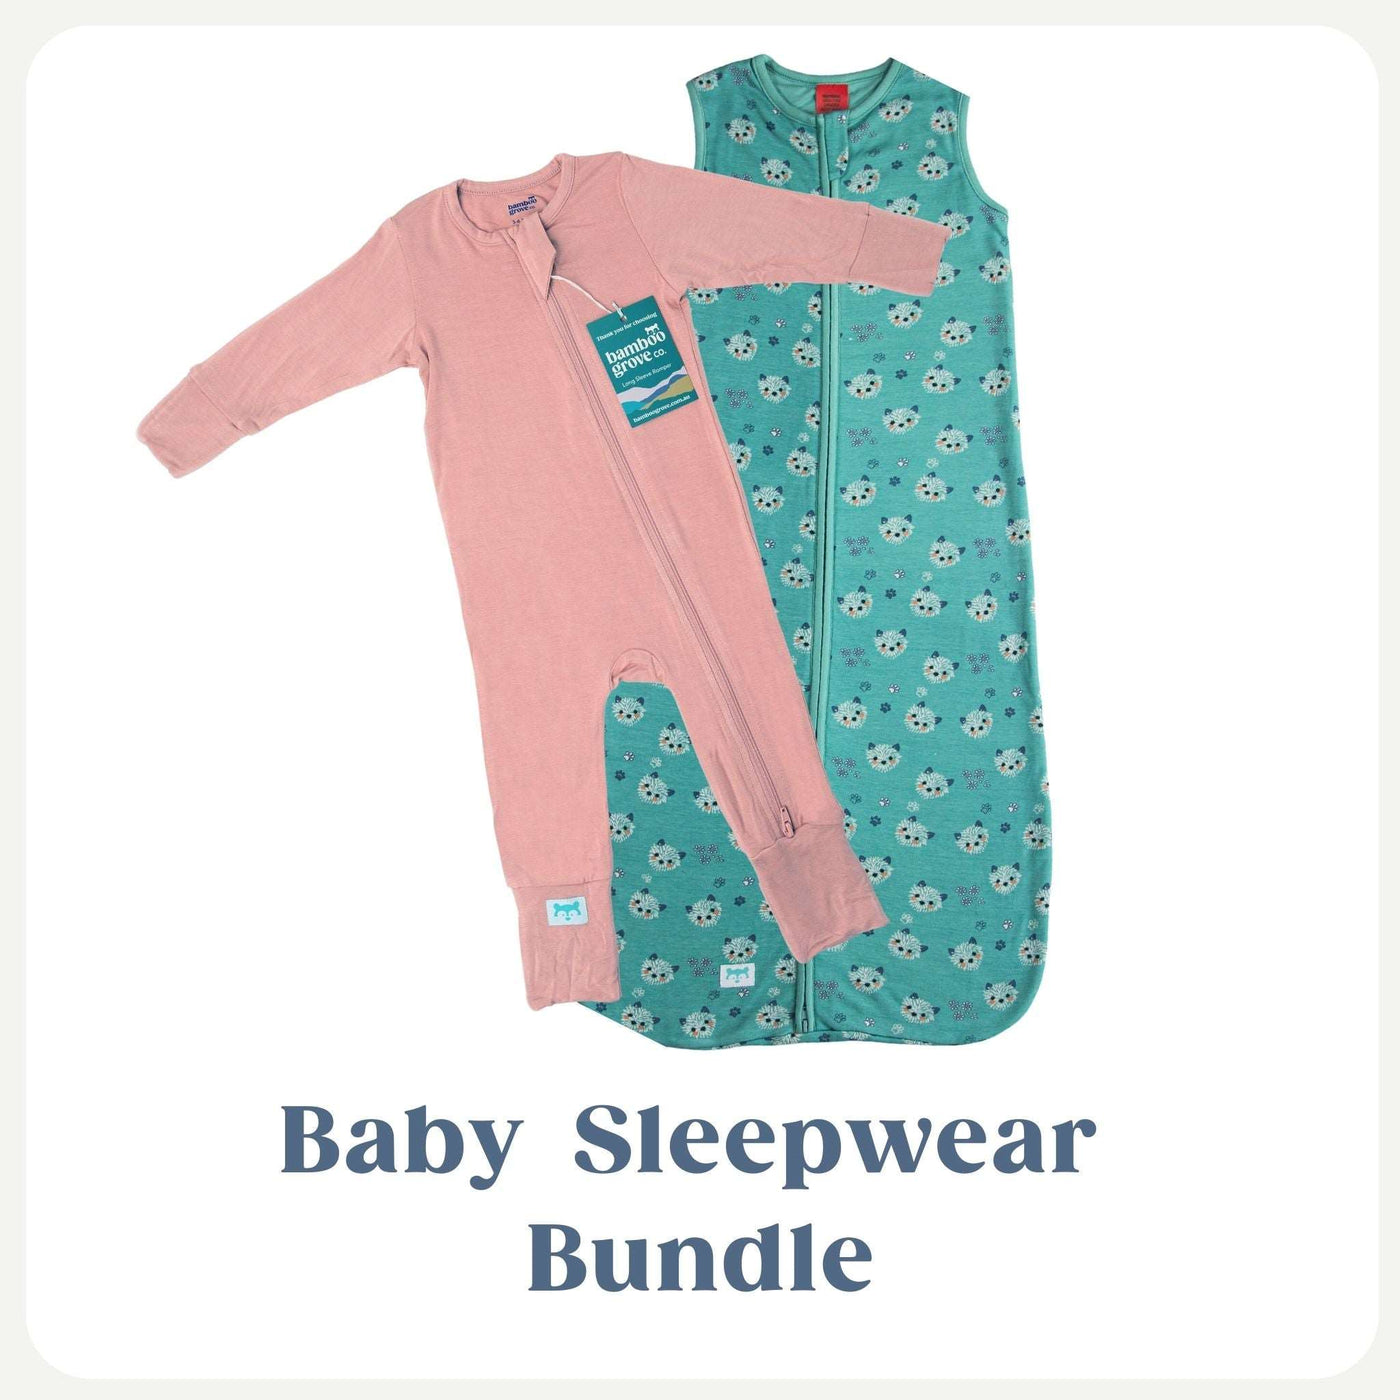 Baby Sleepwear Bundle